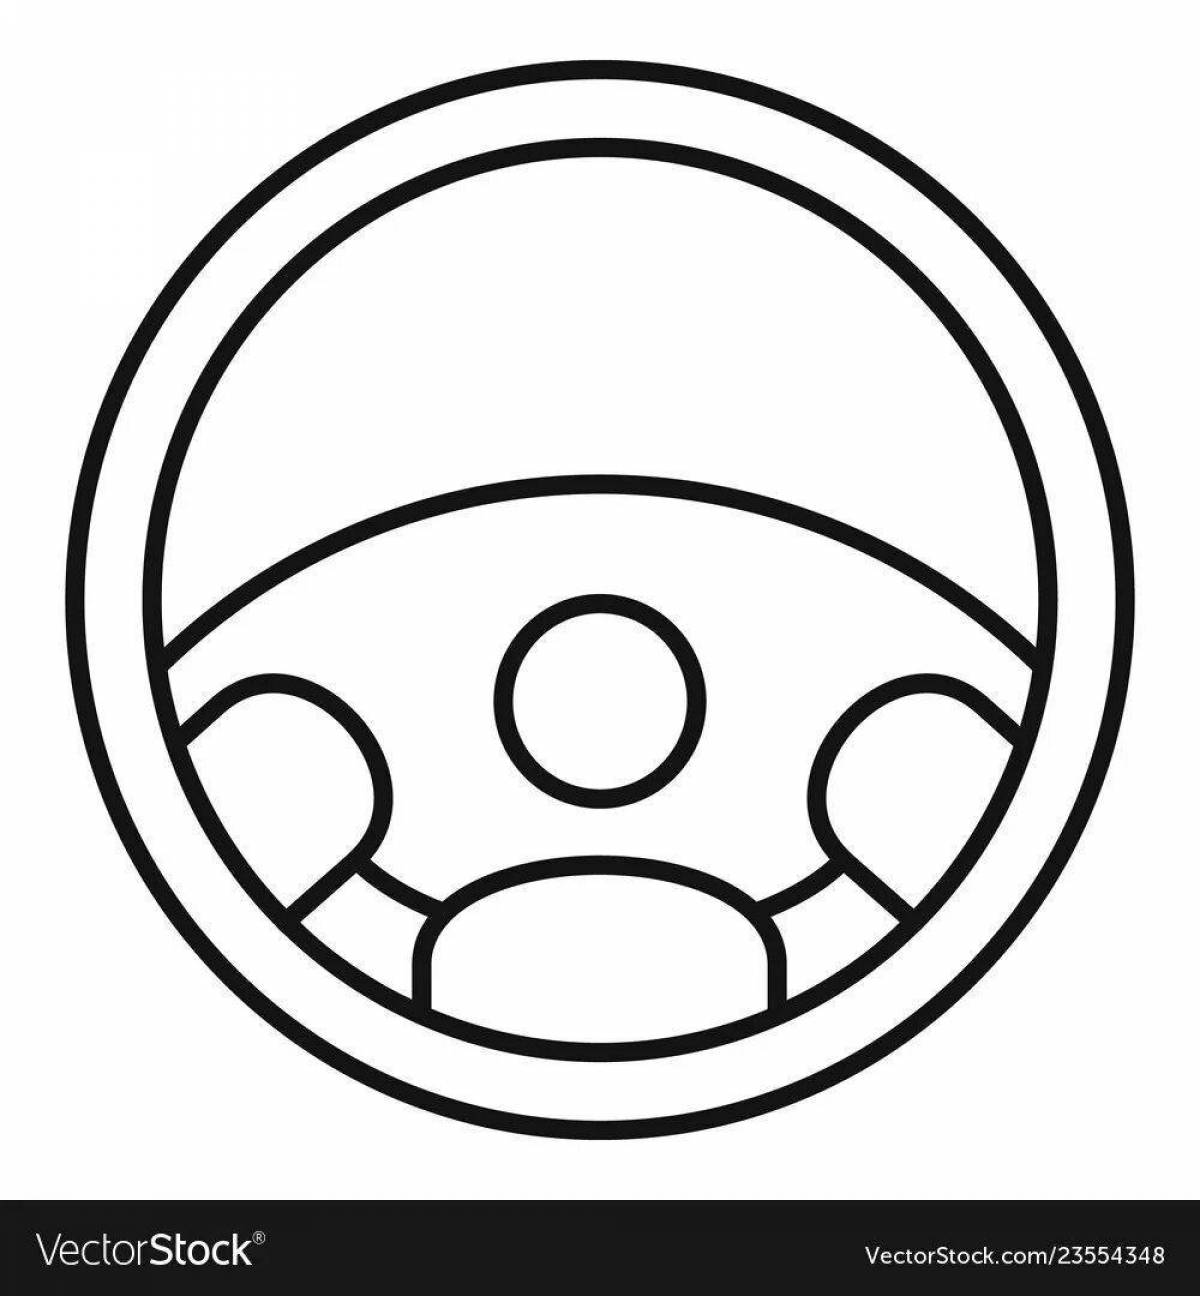 Joyful baby steering wheel coloring page